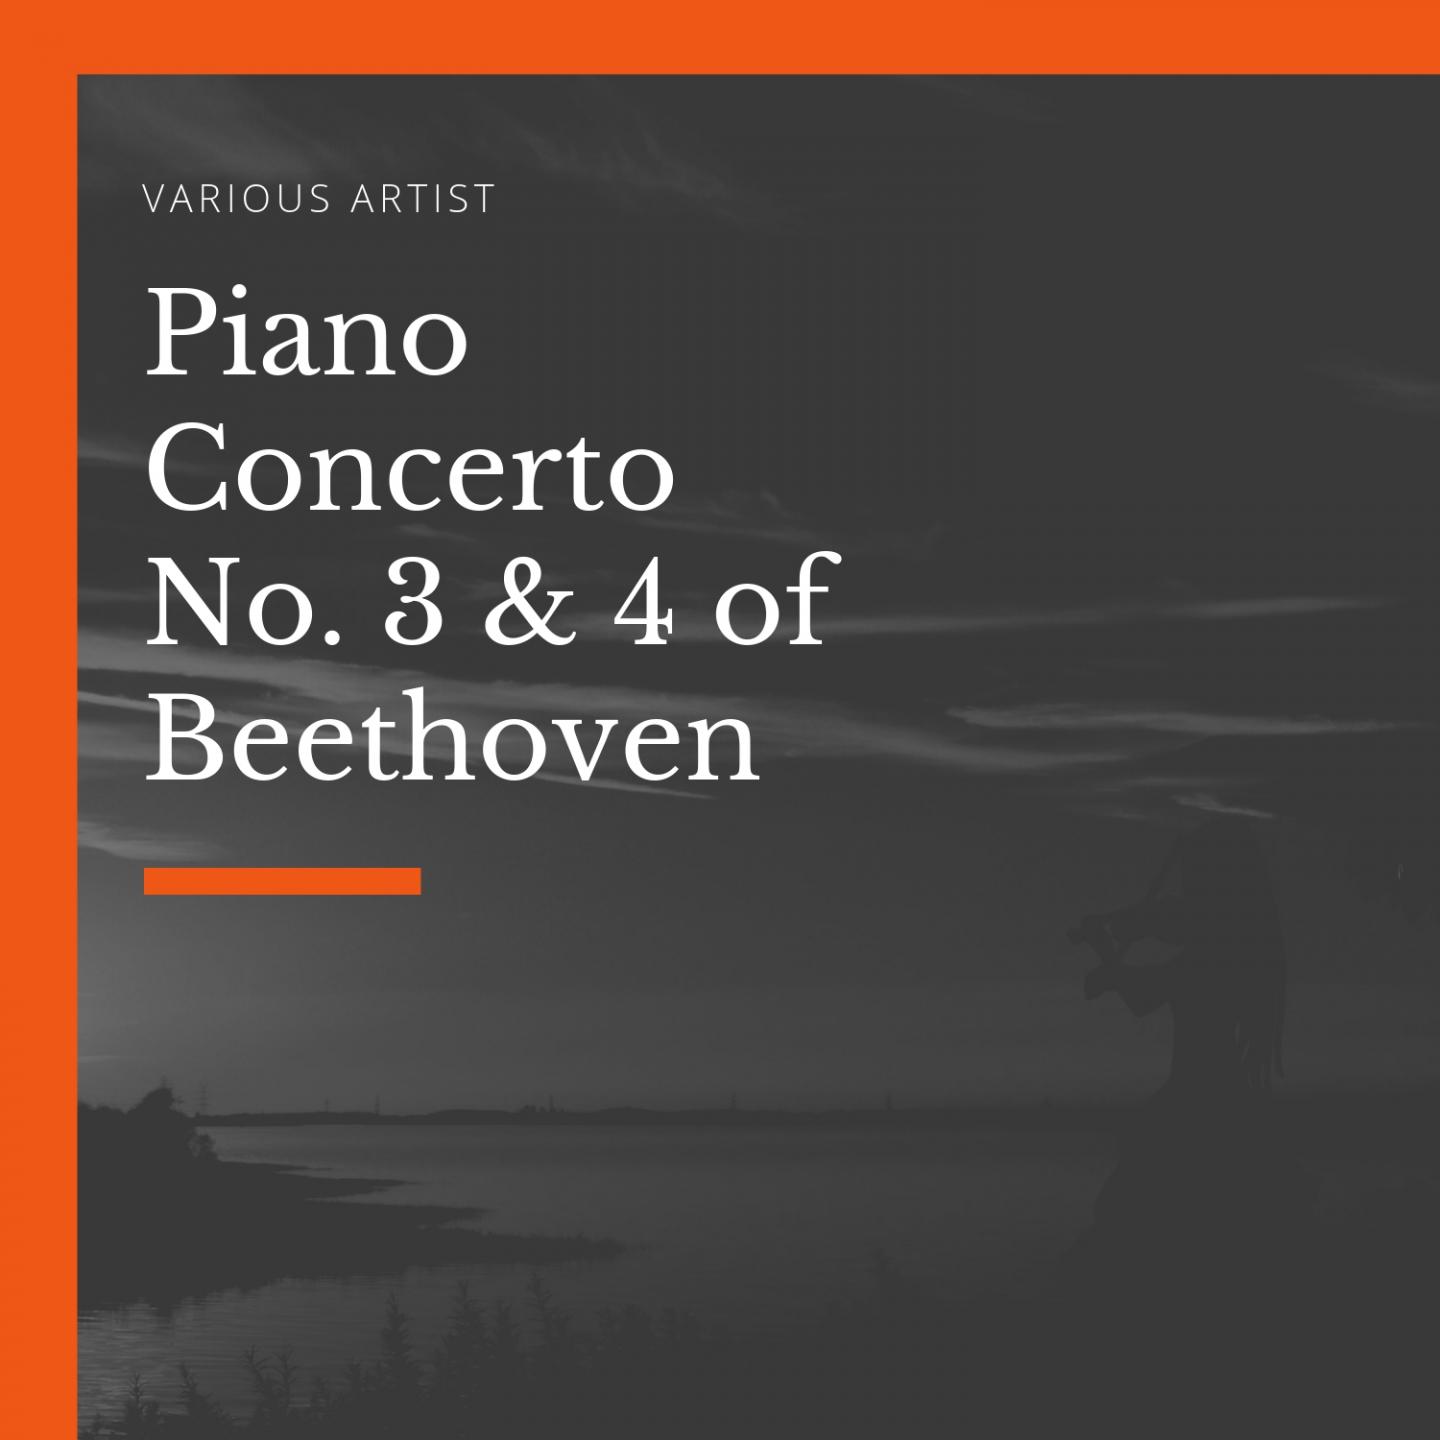 Piano Concerto No. 3, in C Minor, Op. 37: I. Allegro con brio